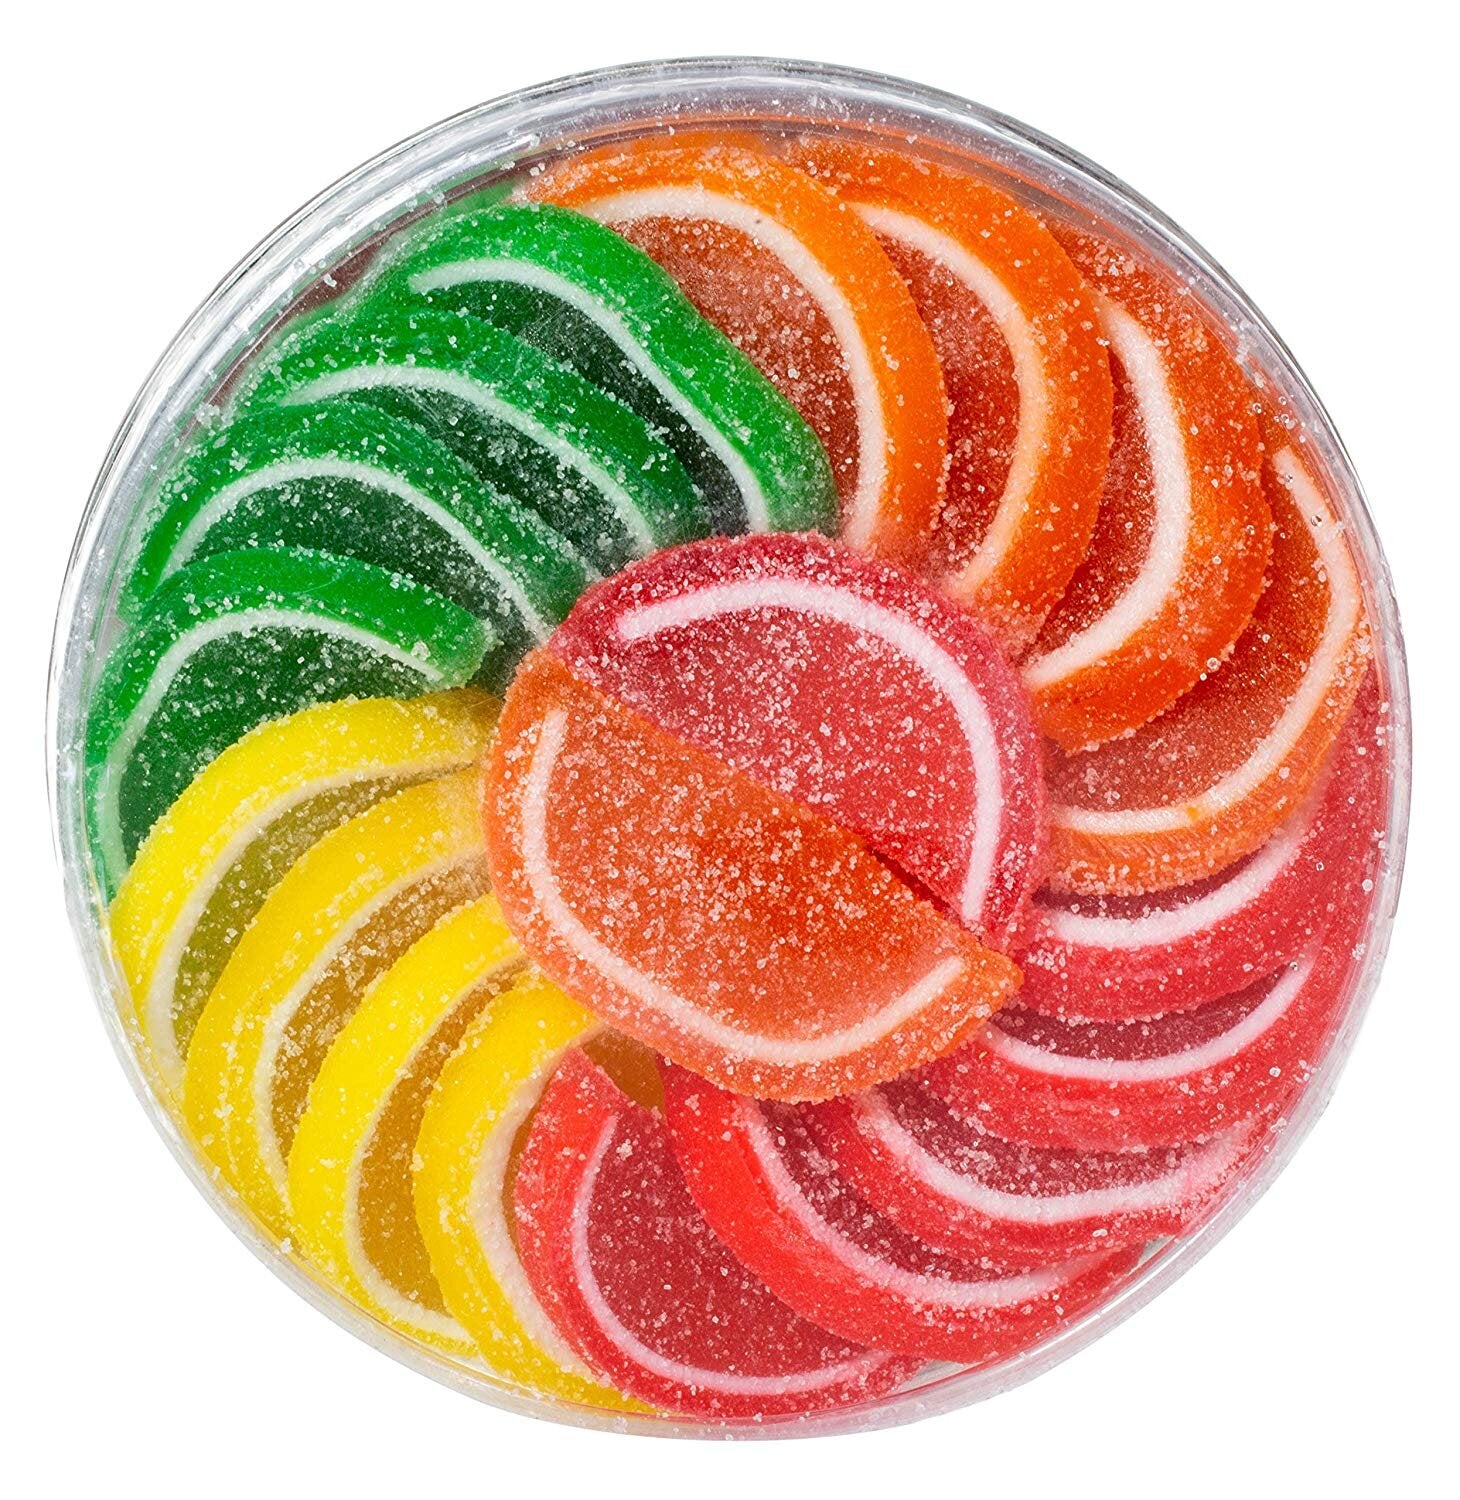 Fruit Slice Candy – Boston Fruit Slices